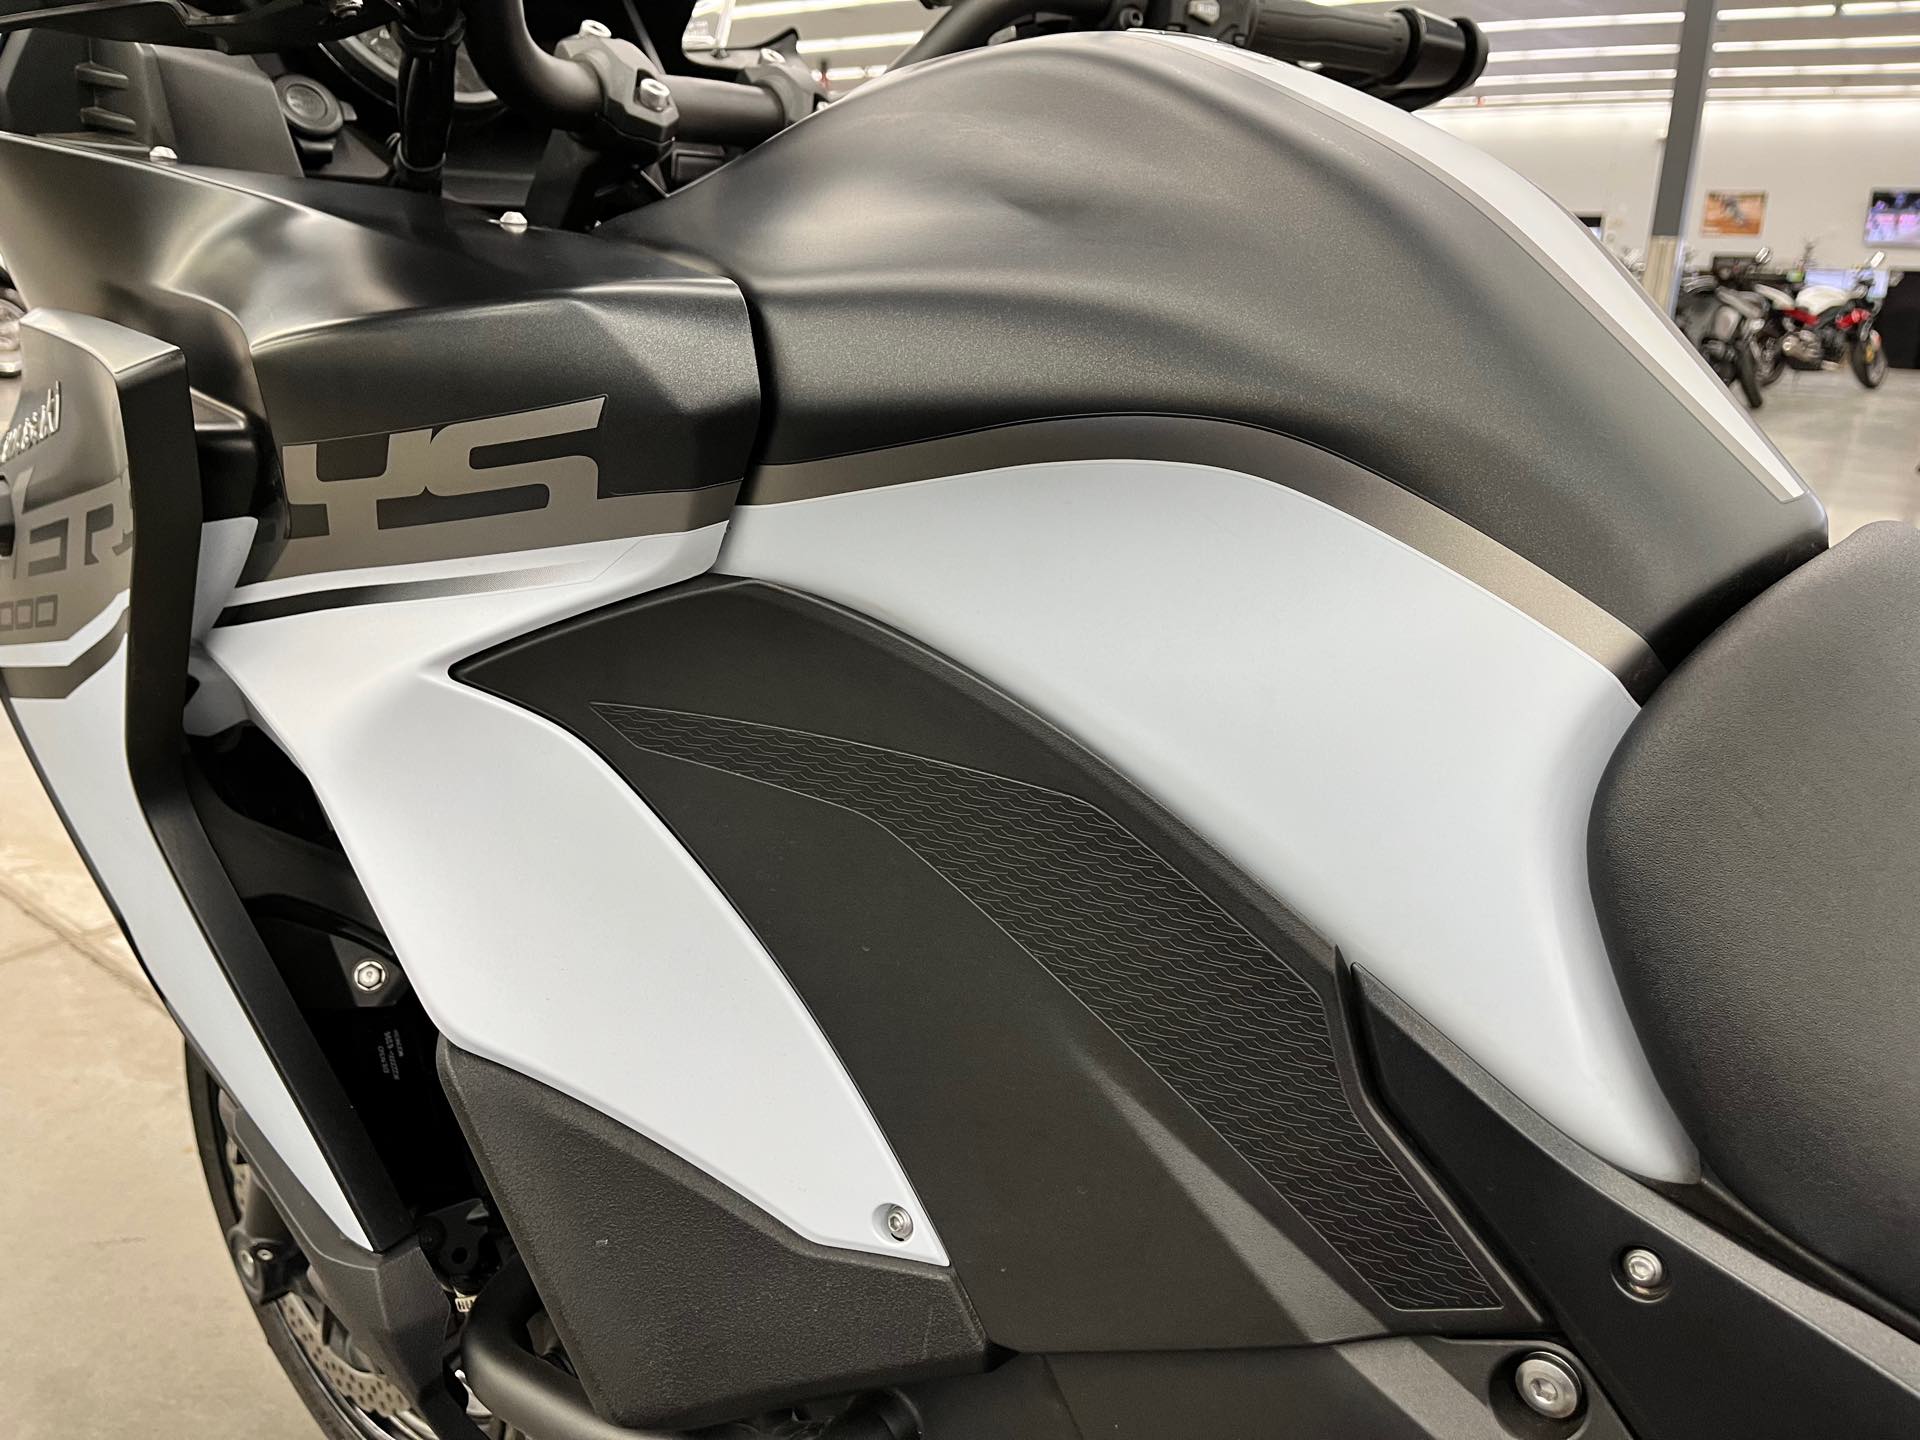 2019 Kawasaki Versys 1000 SE LT+ at Aces Motorcycles - Denver